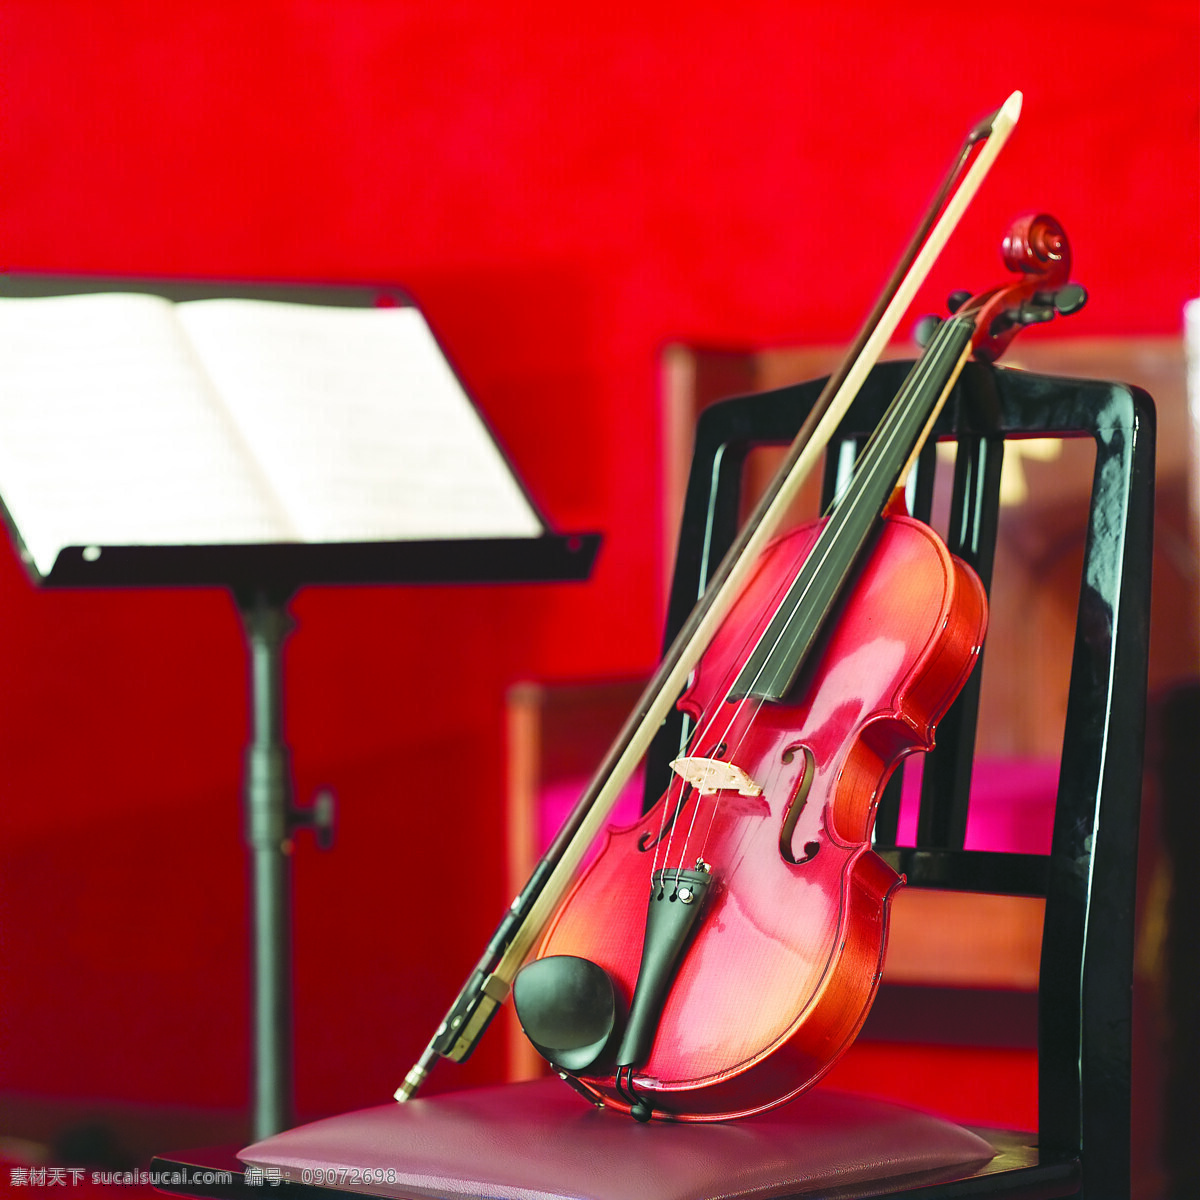 椅子 上 小提琴 音乐艺术 音乐 乐器 弦乐器 静物 特写 摄影图片 高清图片 影音娱乐 生活百科